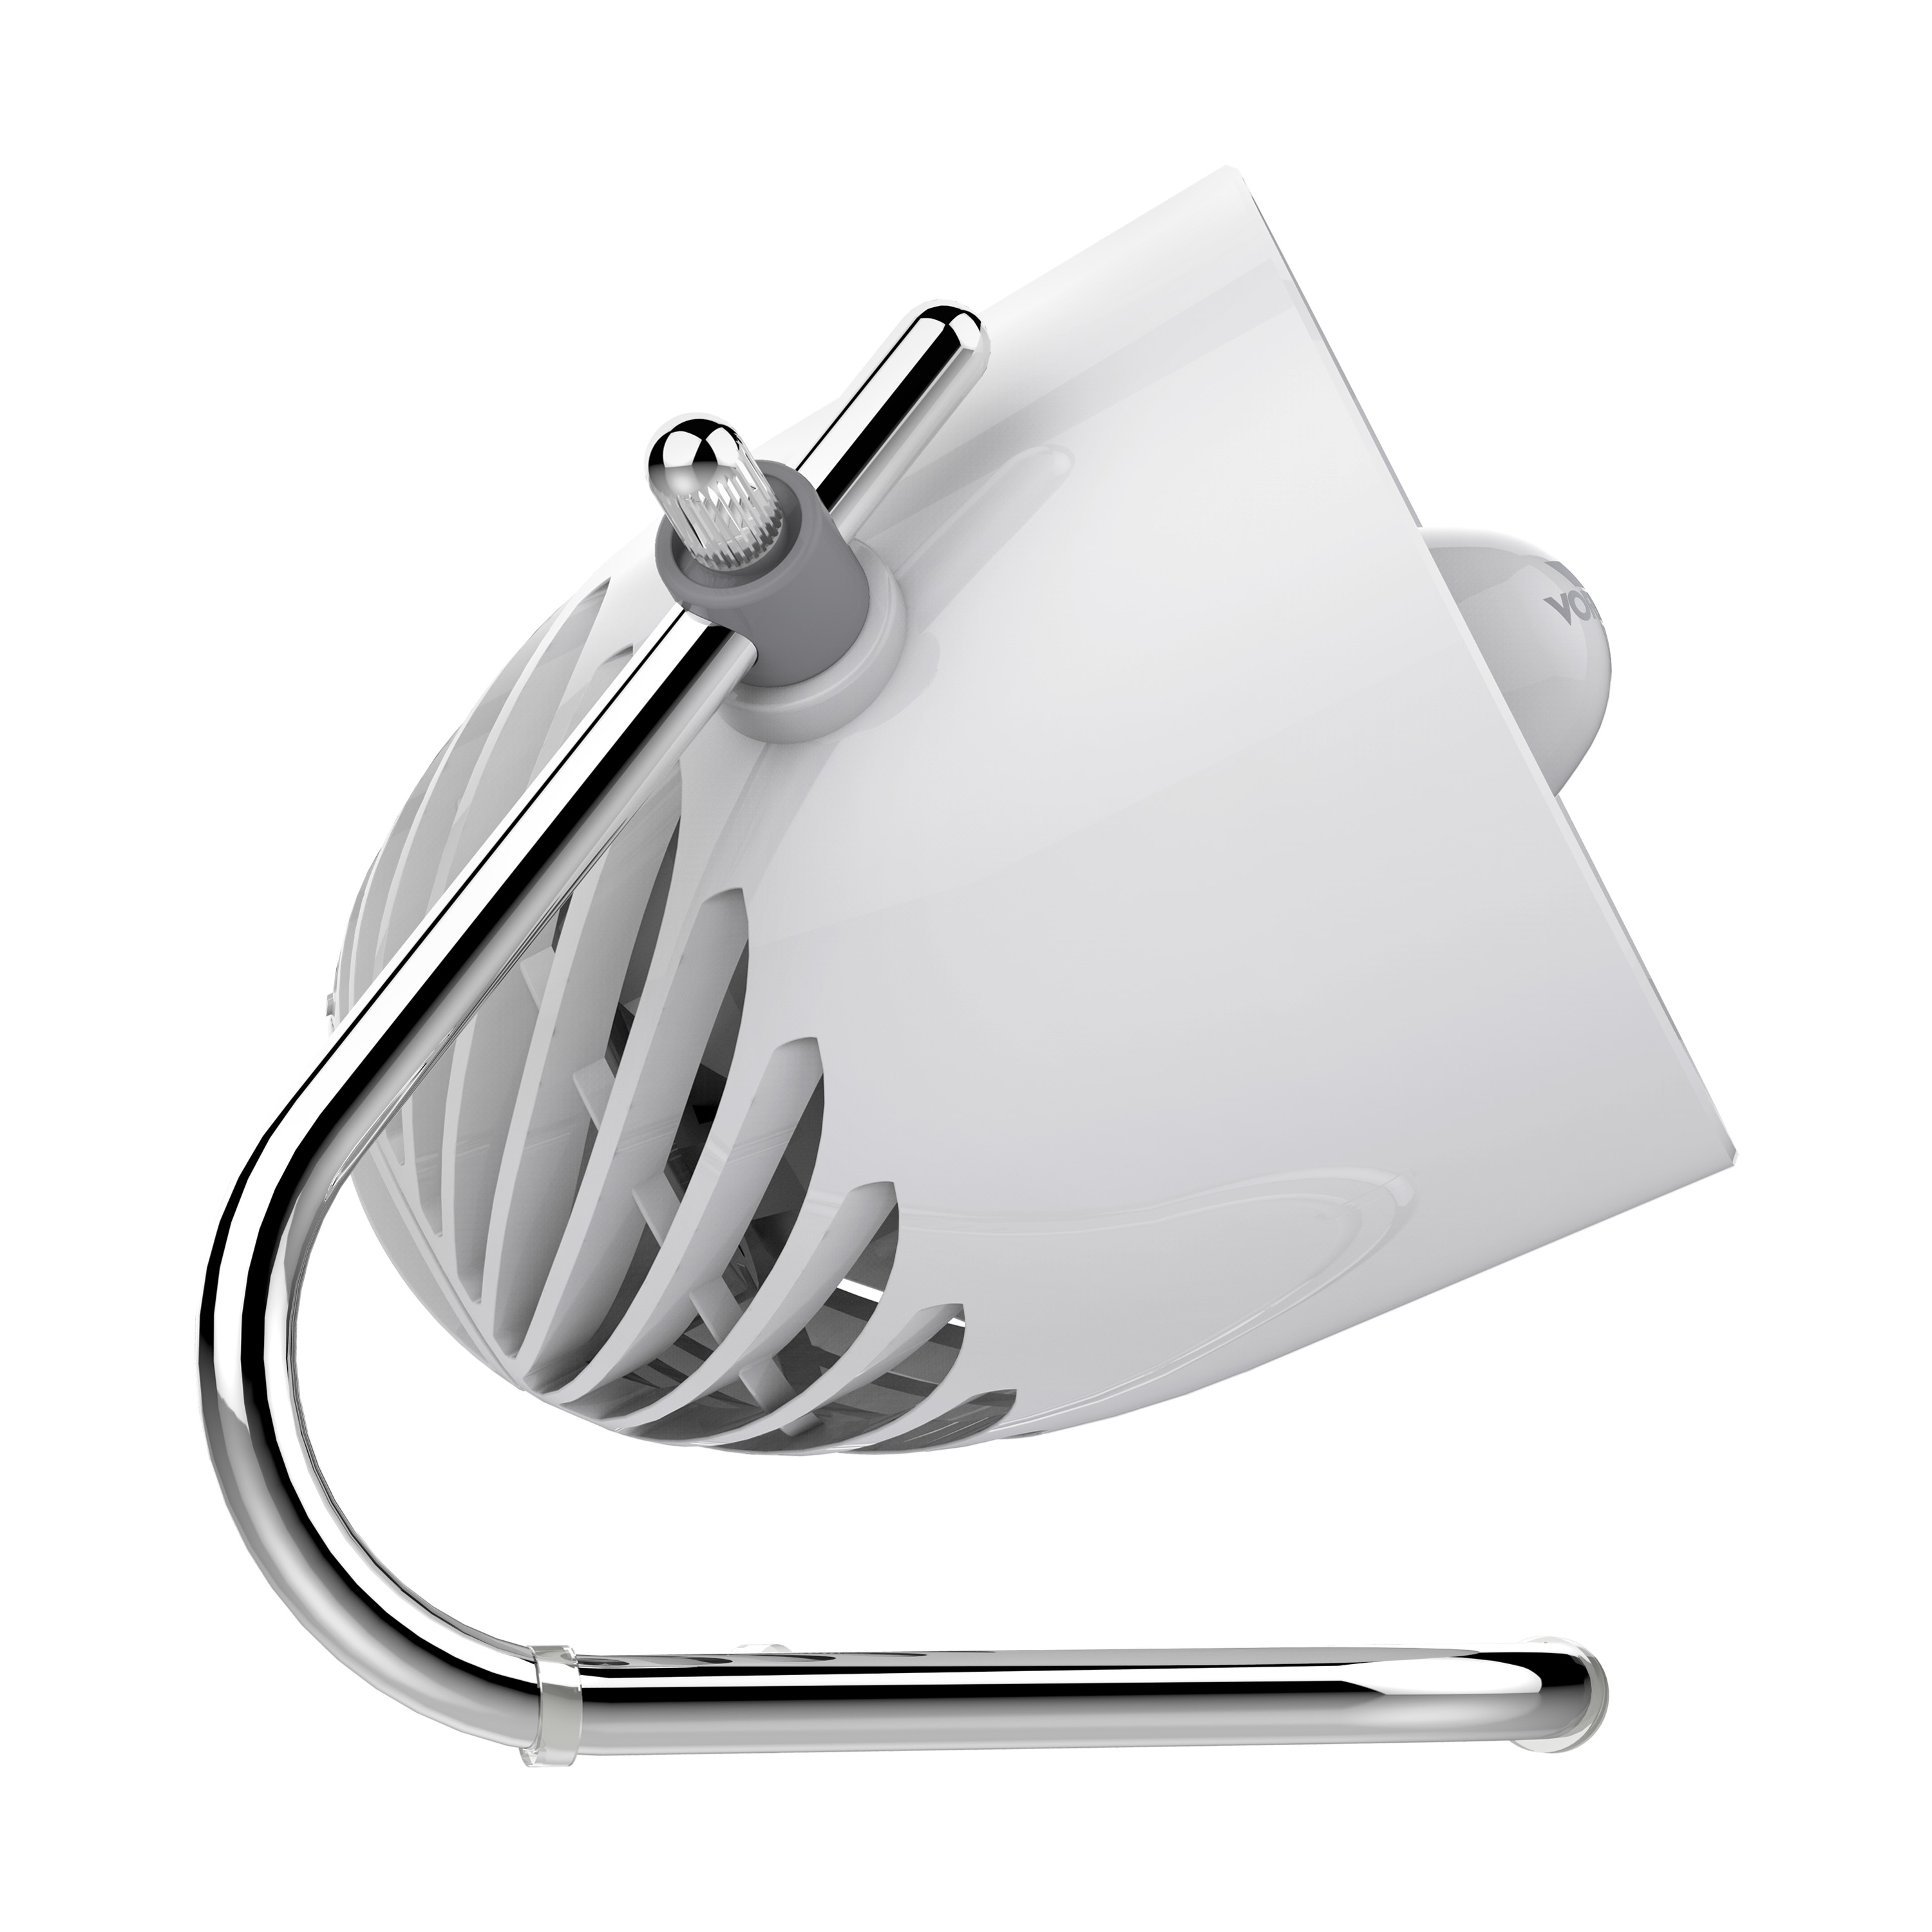 Vornado Pivot White-Grey Quiet Desk Fan - 3 Speed Settings